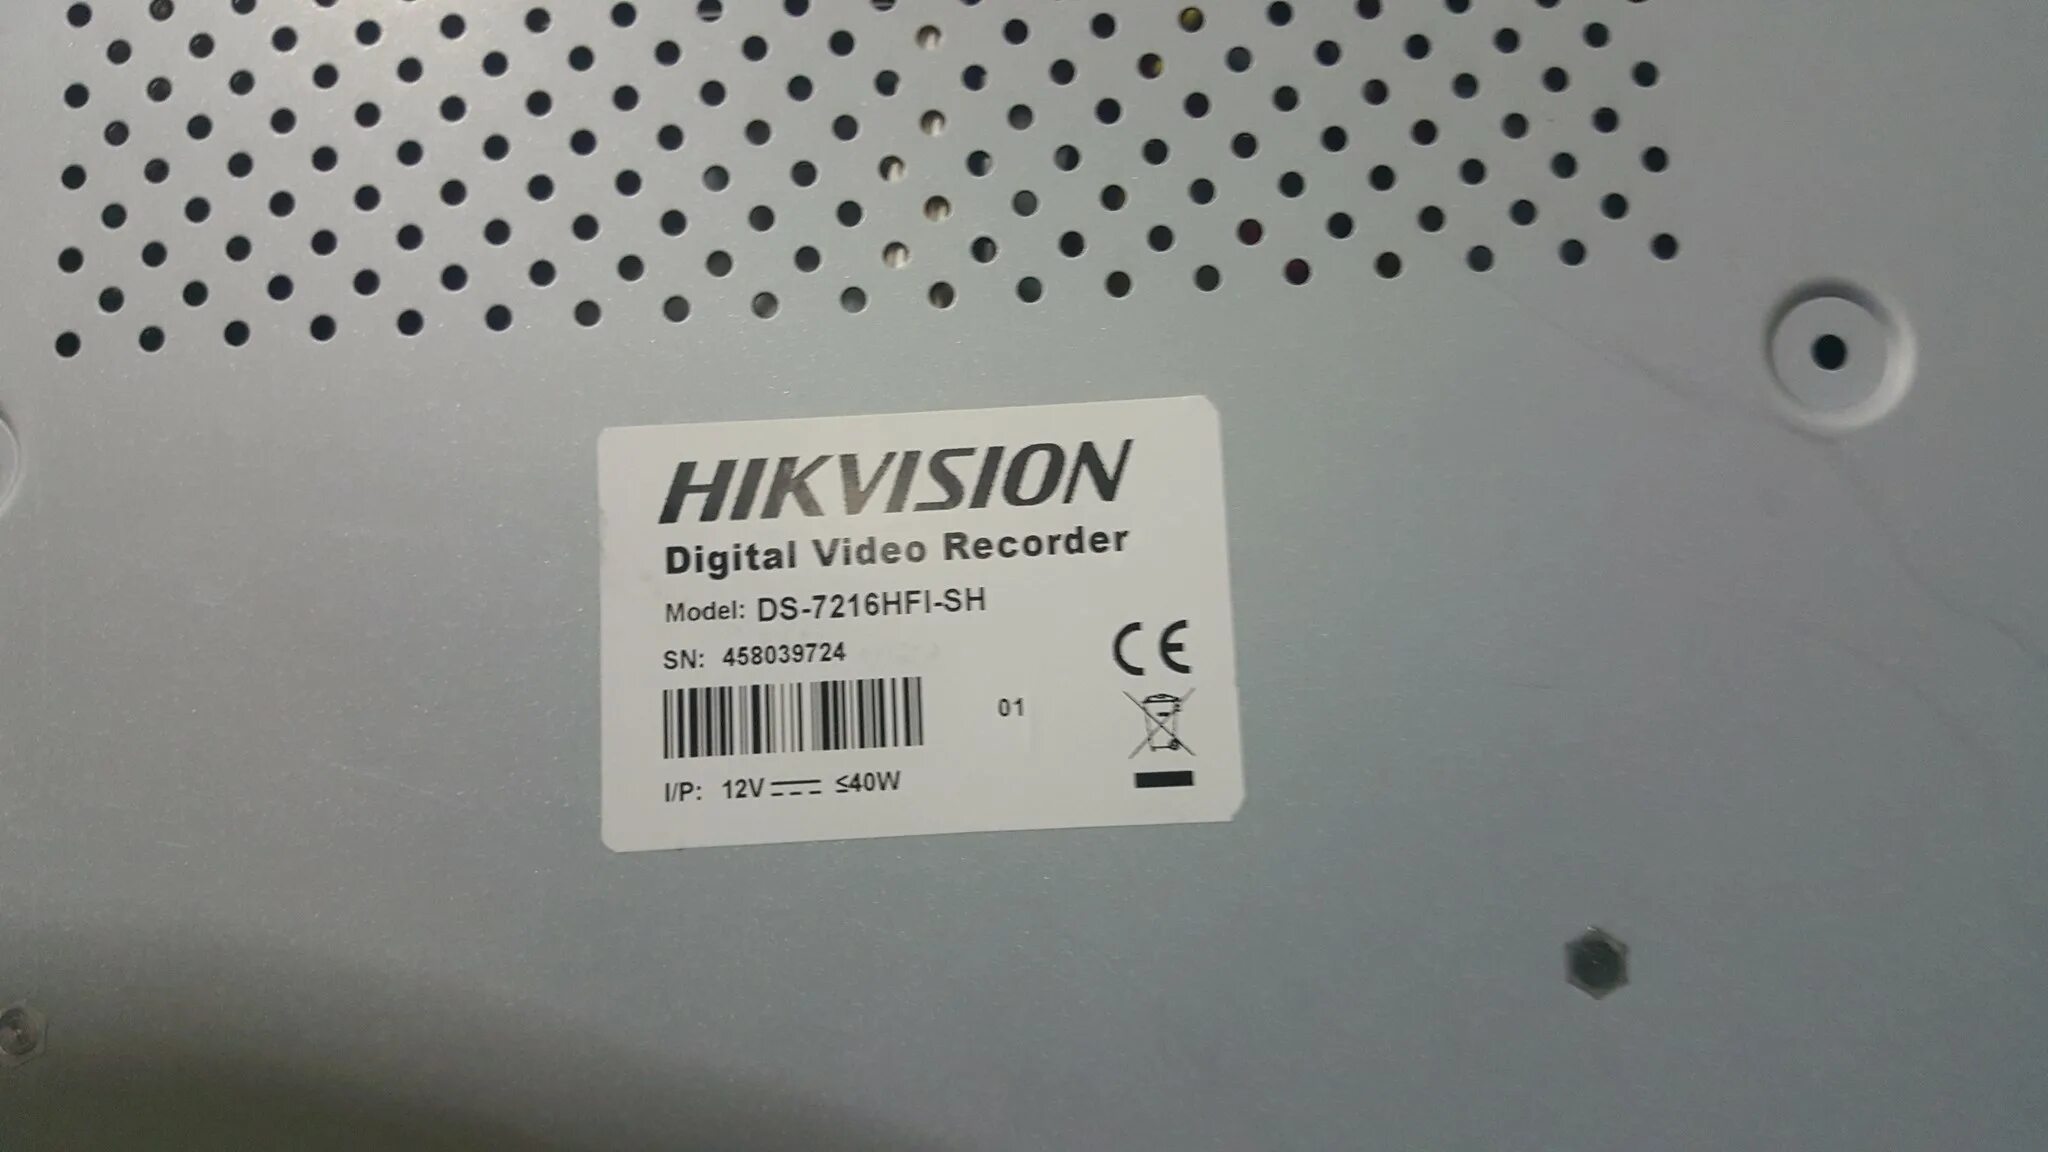 Hikvision регистратор пароль. Hikvision видеорегистратор серийный номер. Серийный номер DVR Hikvision. Стандартный пароль на видеорегистратор. Пароль на регистратор Hikvision.